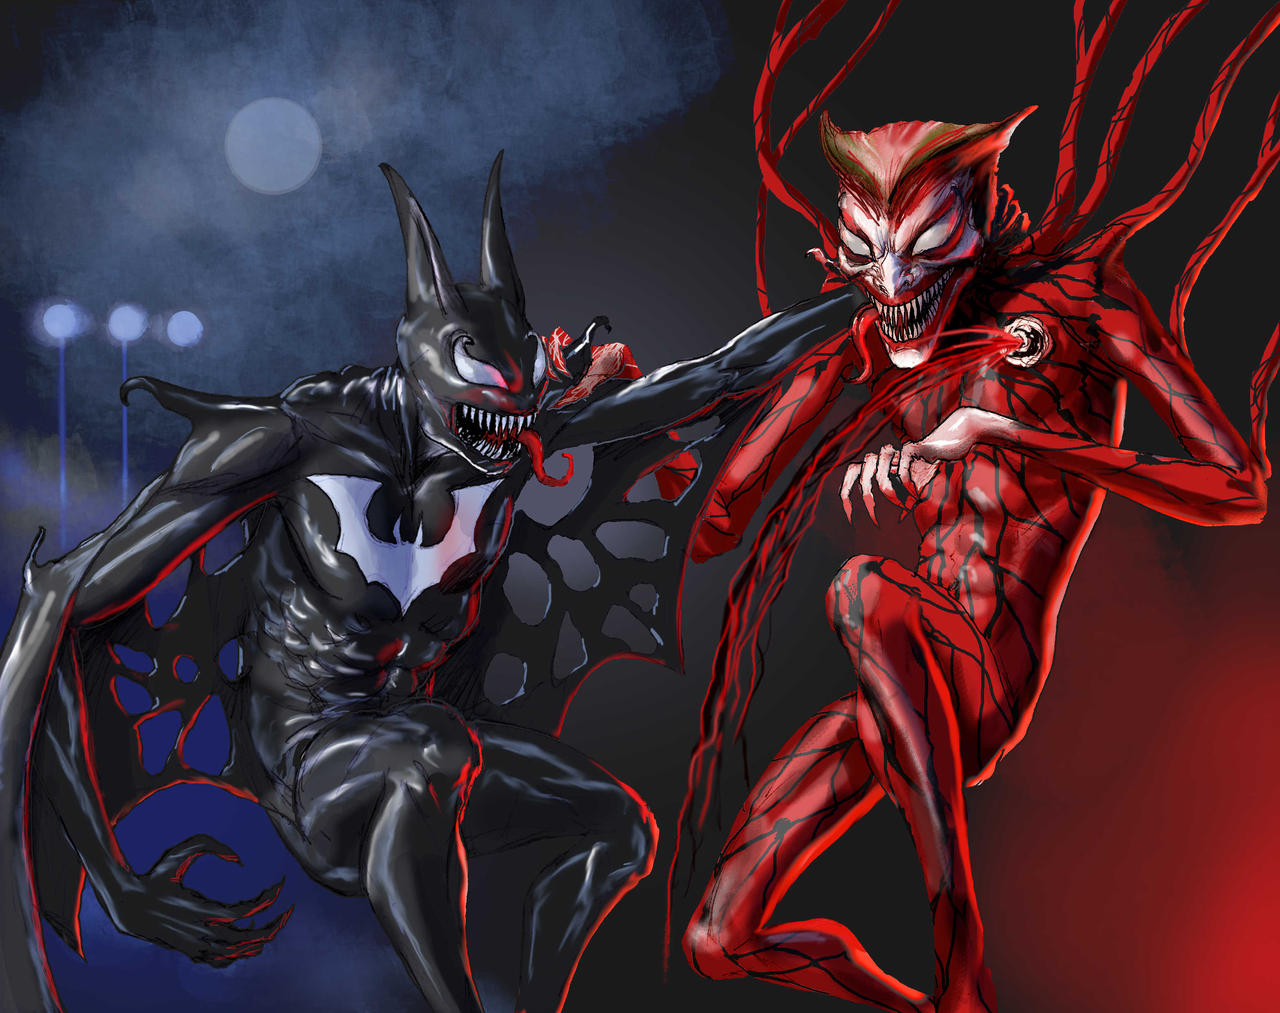 TLIID Venom vs Carnage as Batman vs The Joker by Nick-Perks on DeviantArt